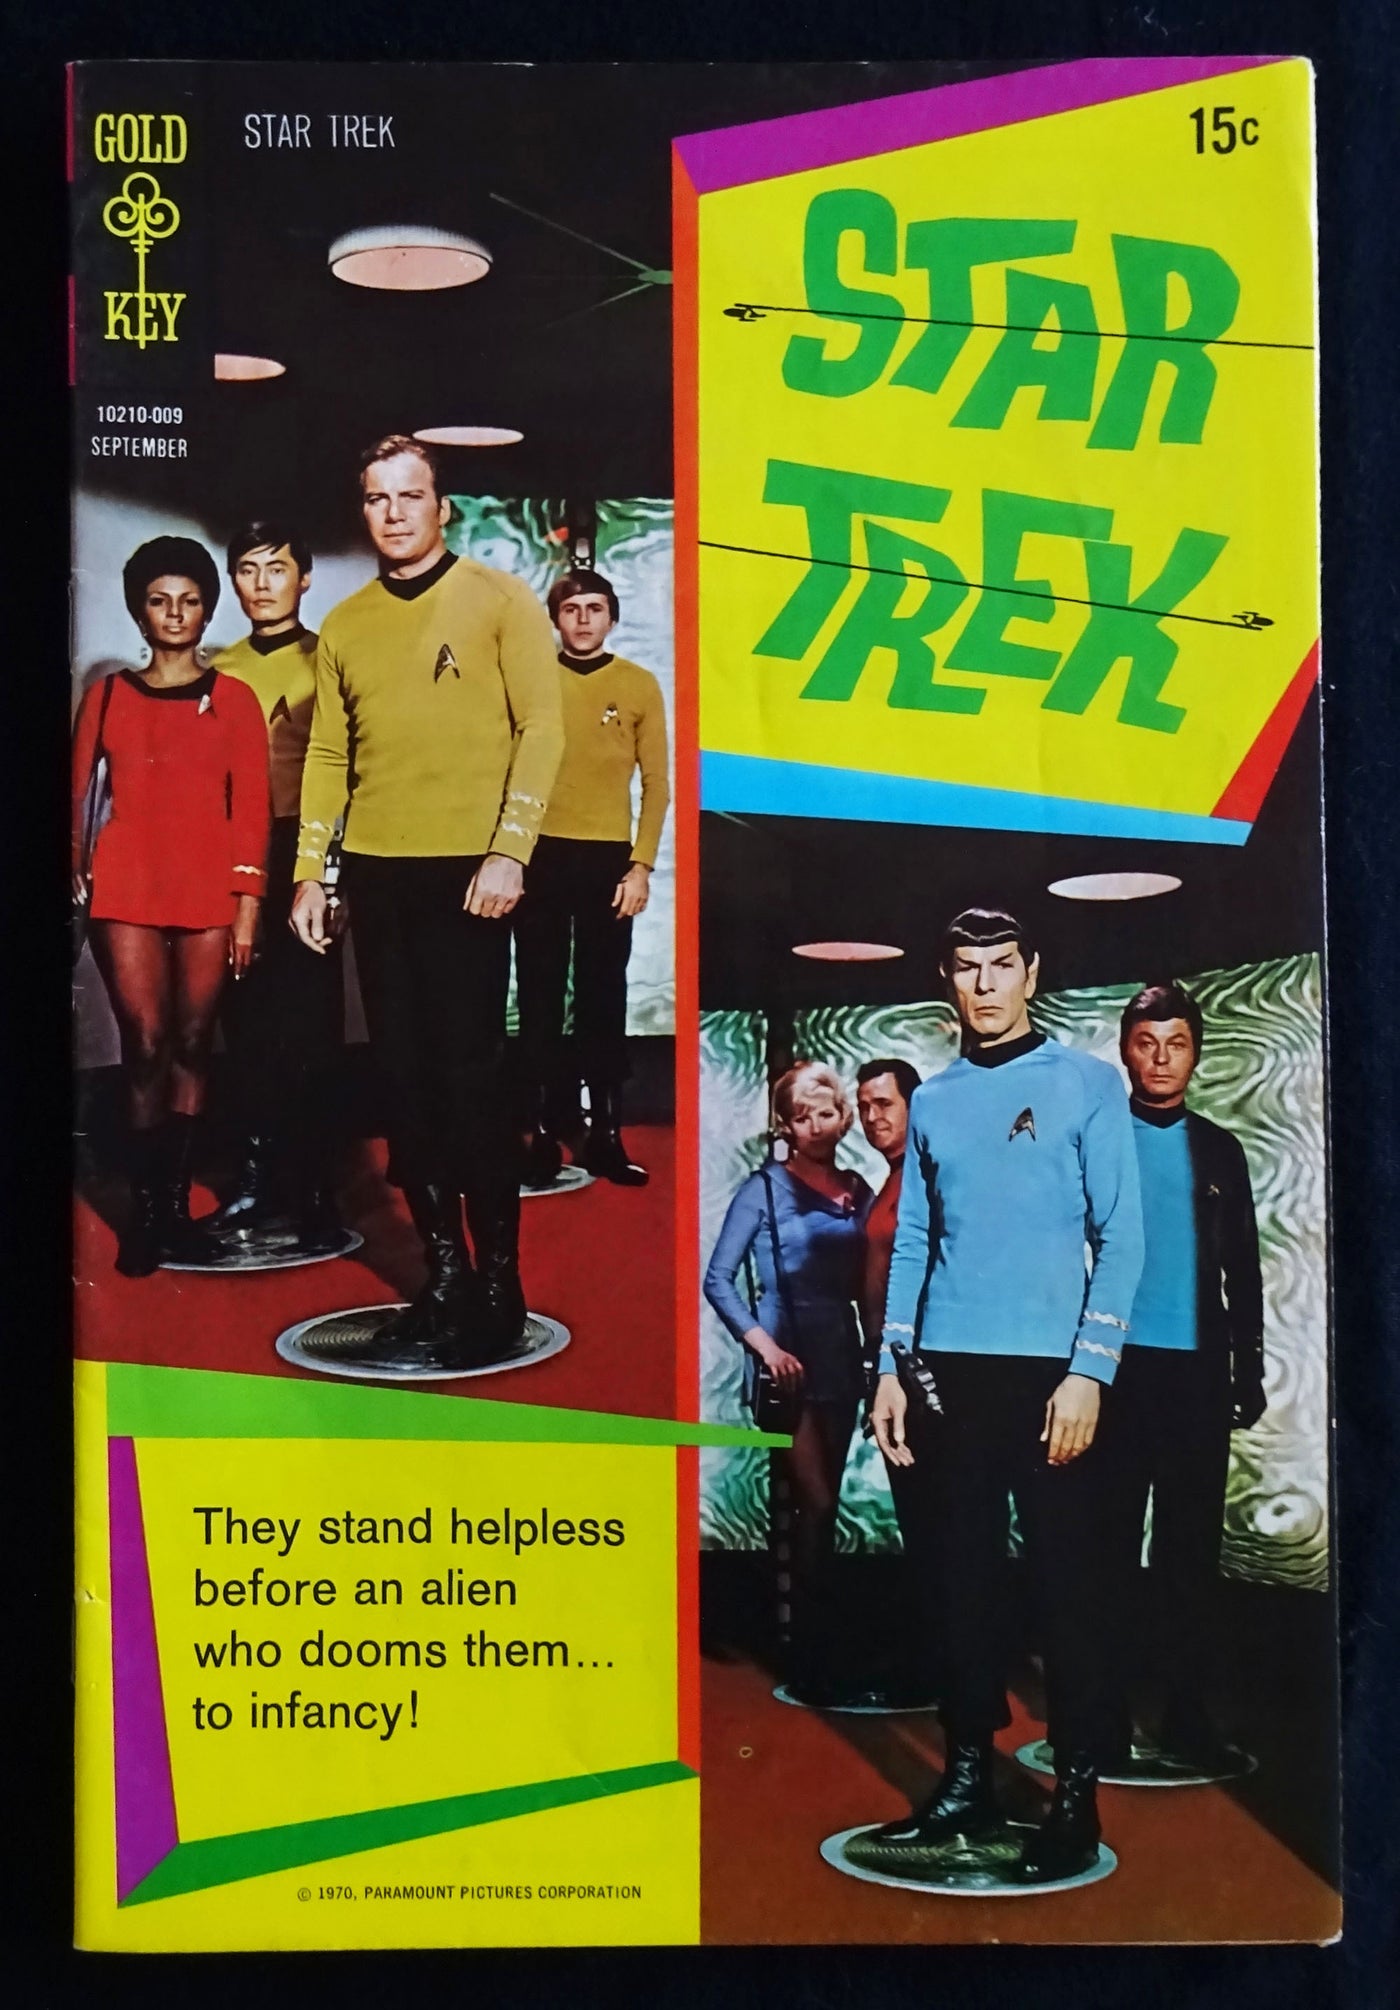 Star Trek #8 Gold Key Sept 1970